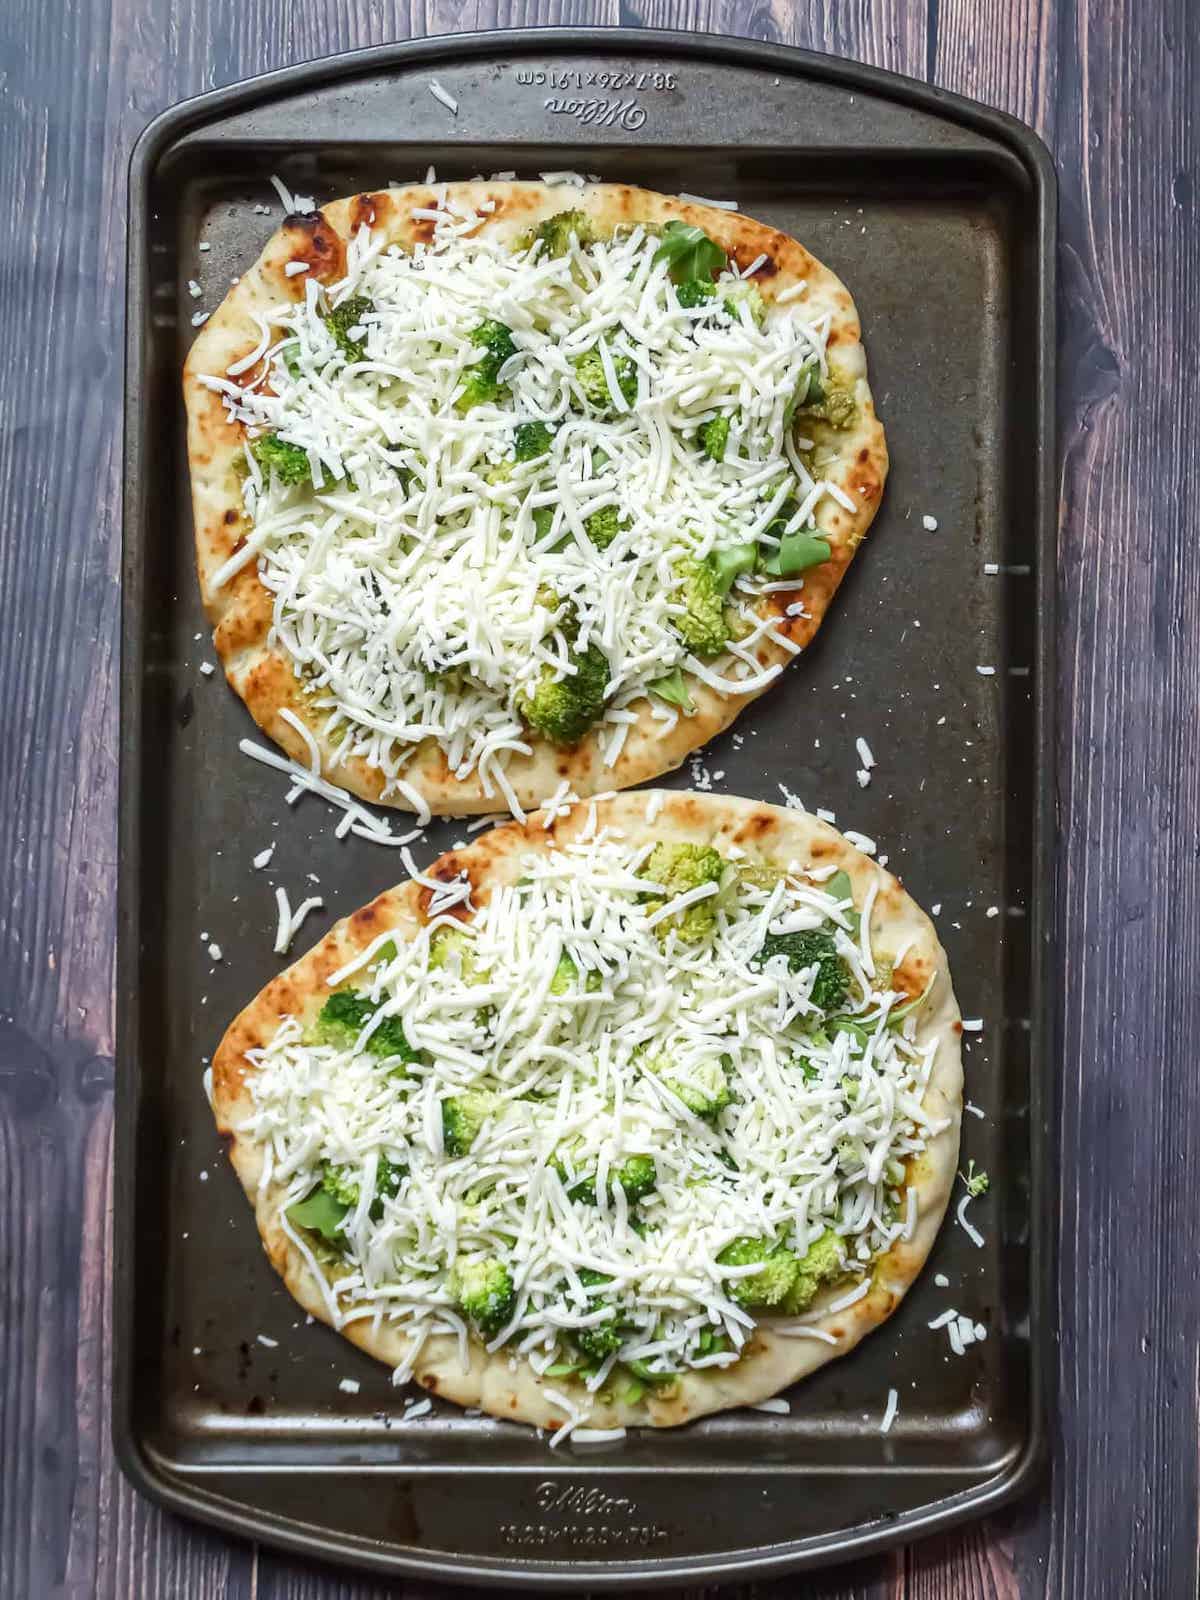 flatbreads topped with broccoli, arugula and mozzarella cheese